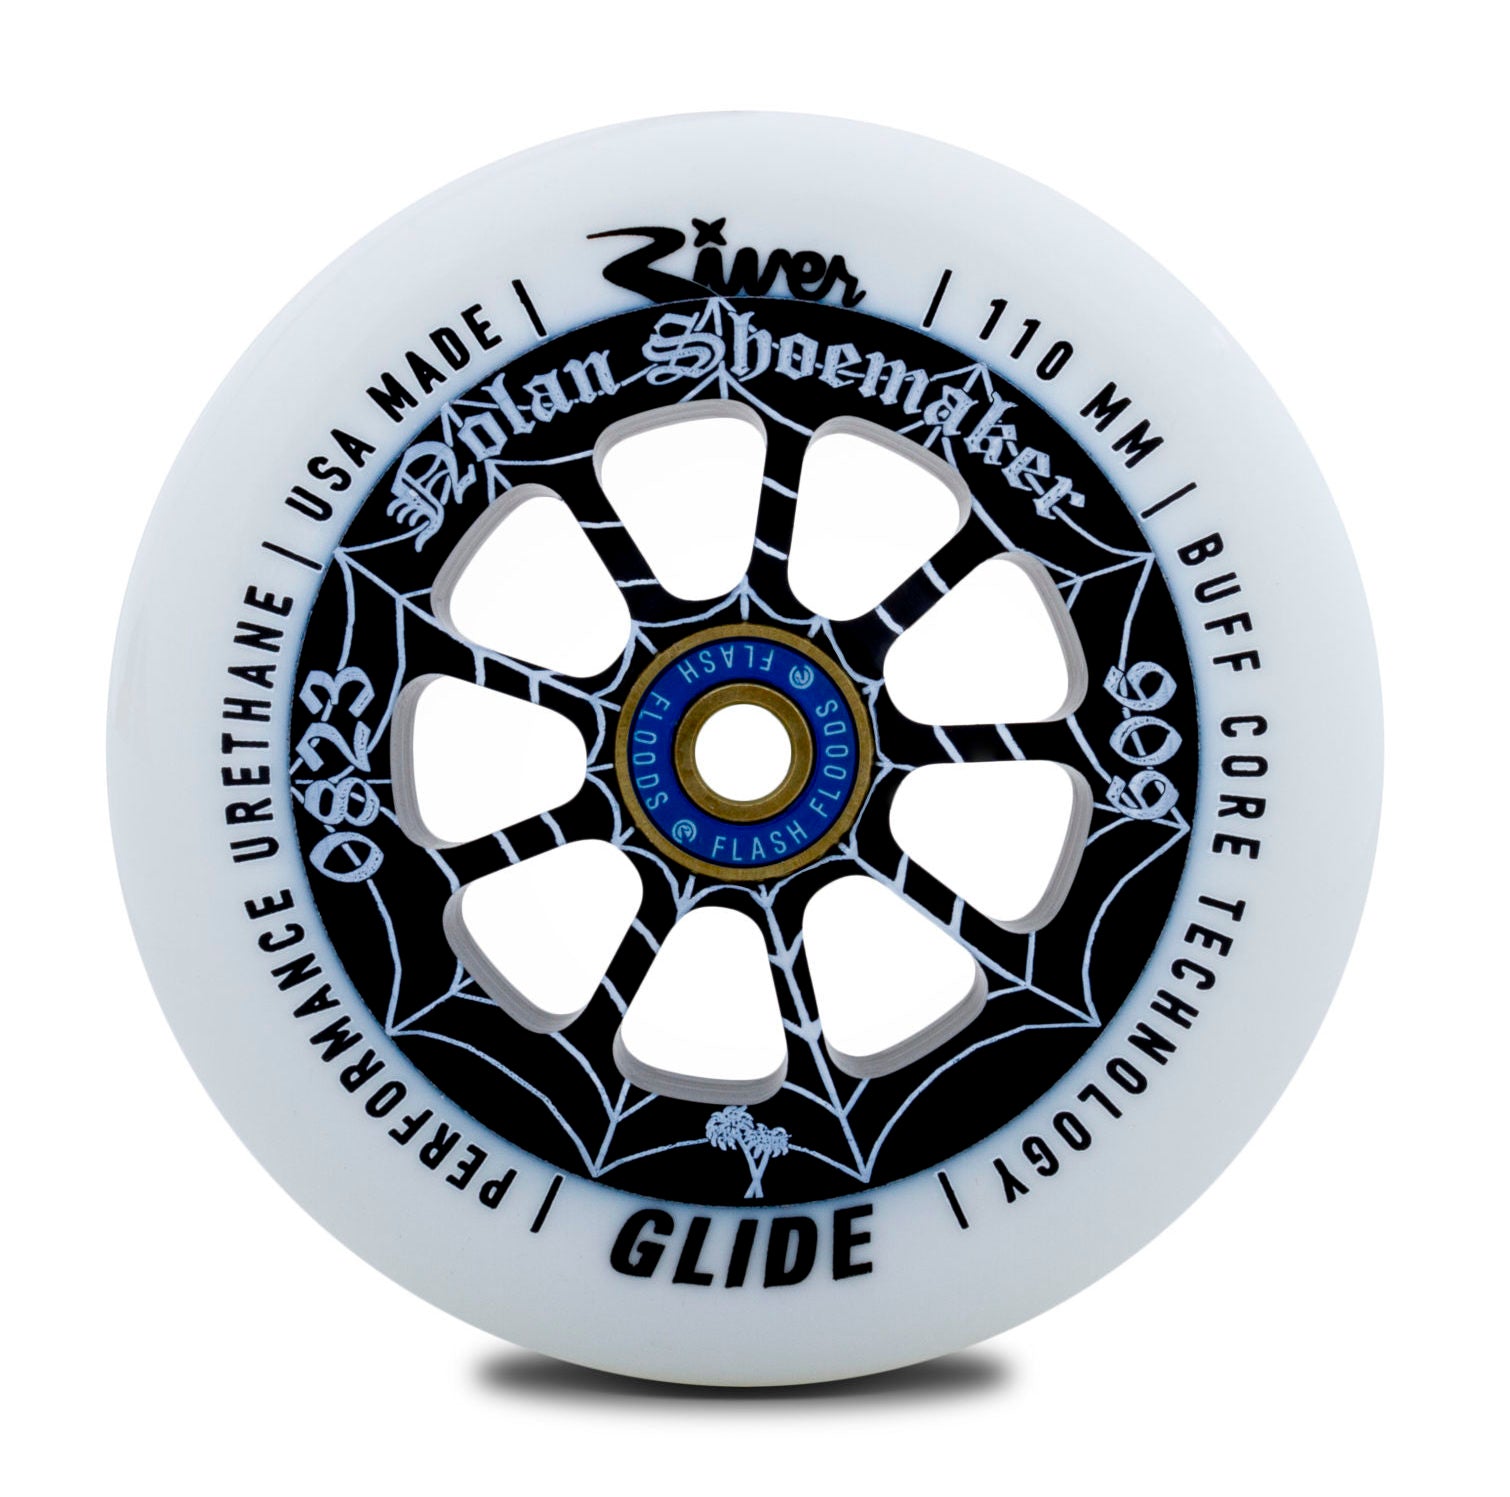 River Wheel Co – 110mm “Cali” Glides Nolan Shoemaker Signature Blanc sur Noir